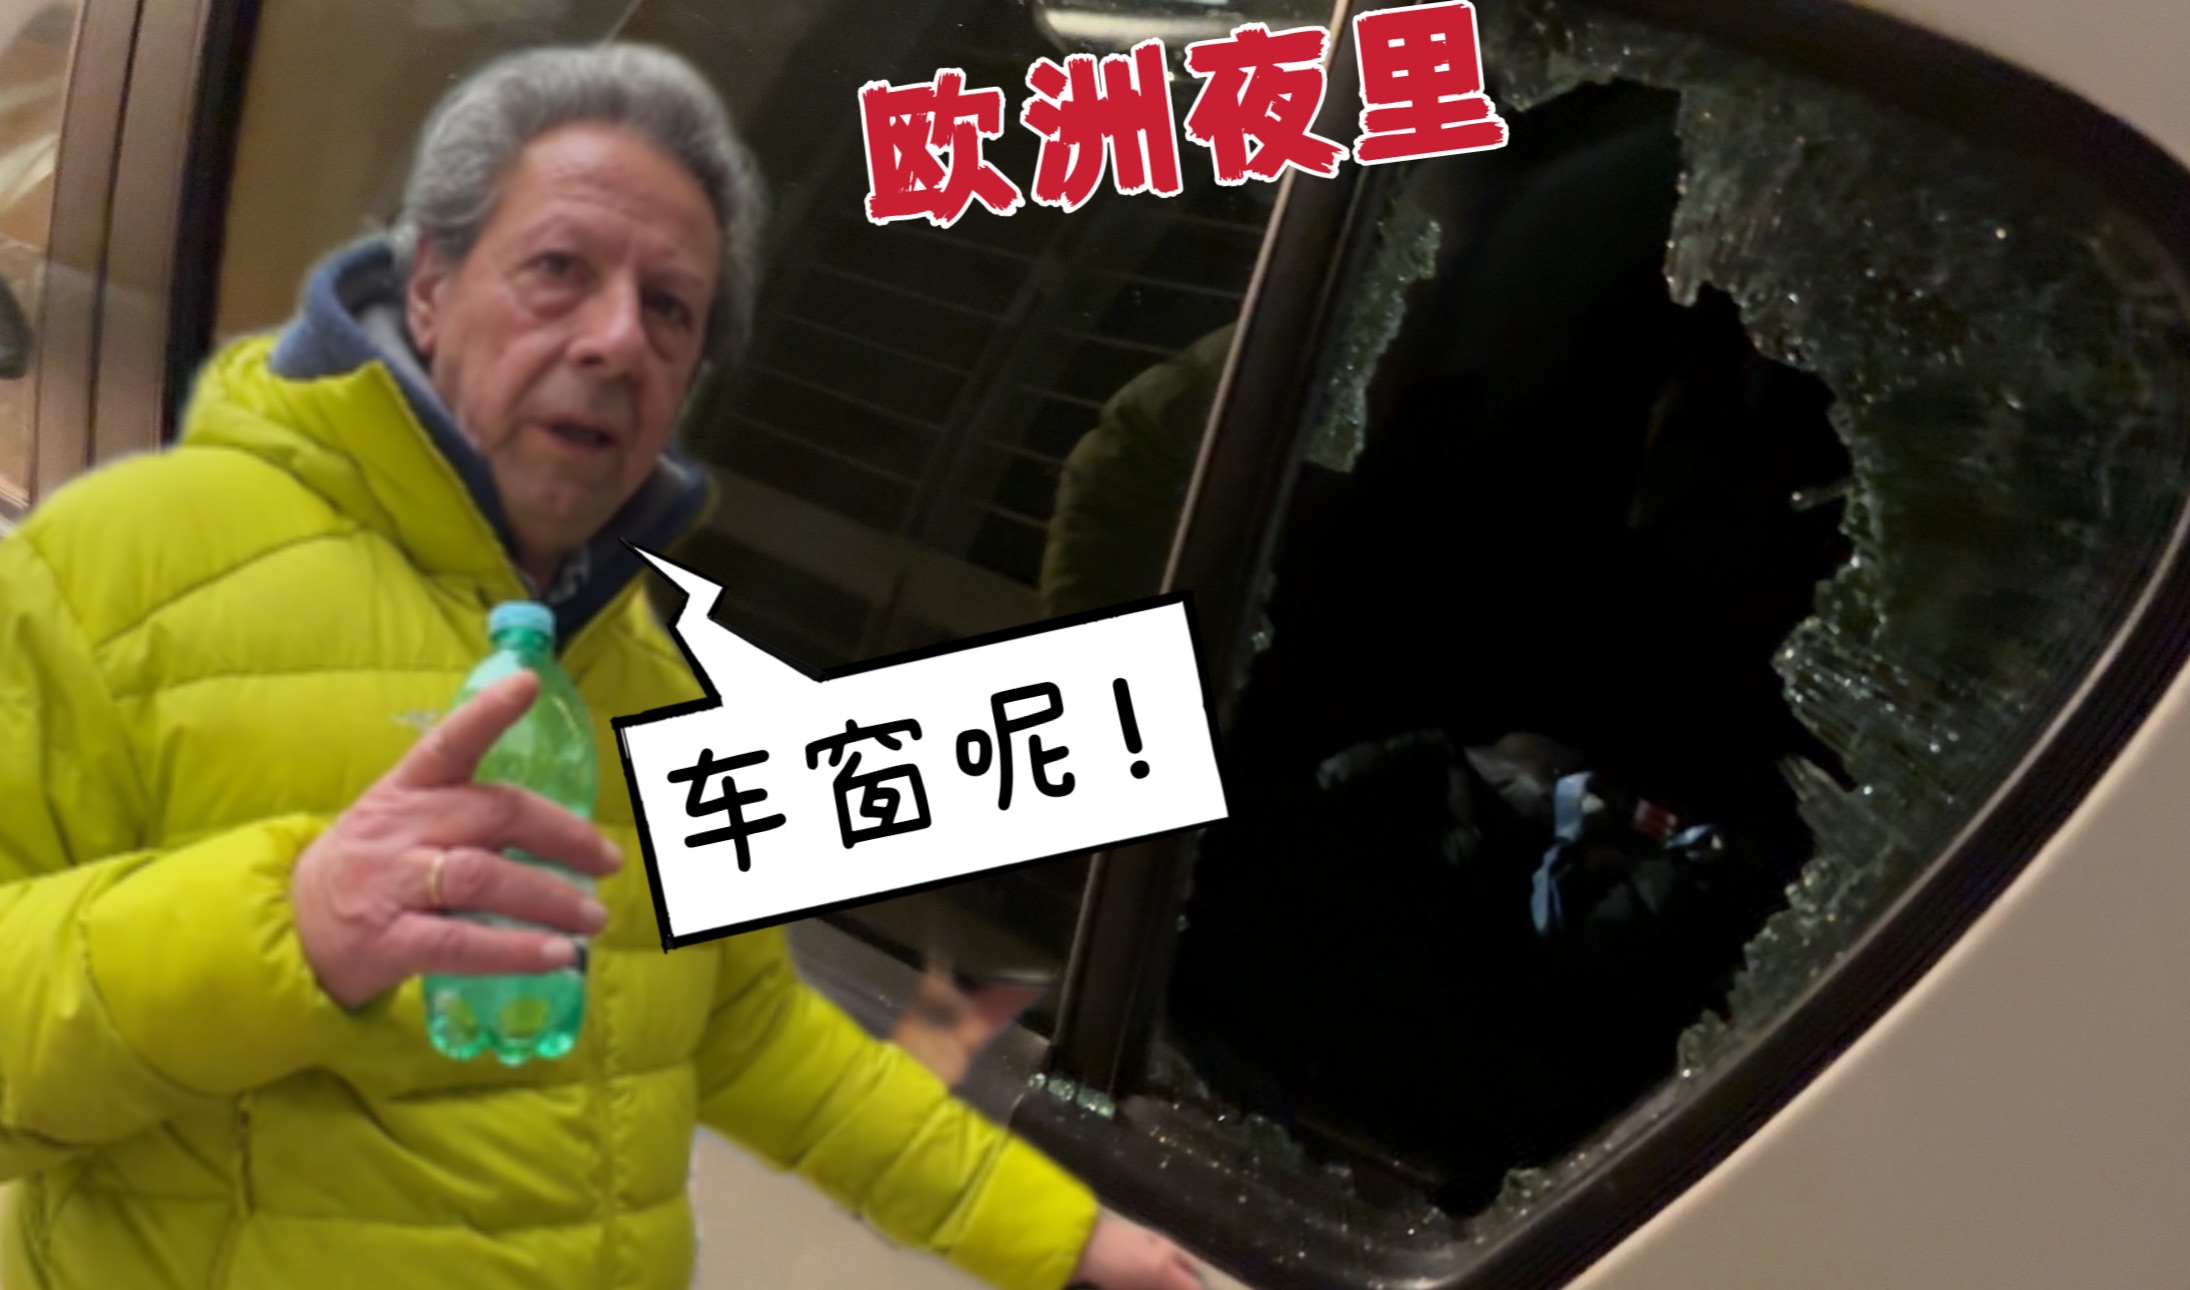 家人习惯中国的安全后,在欧洲晚上车窗直接被砸了!